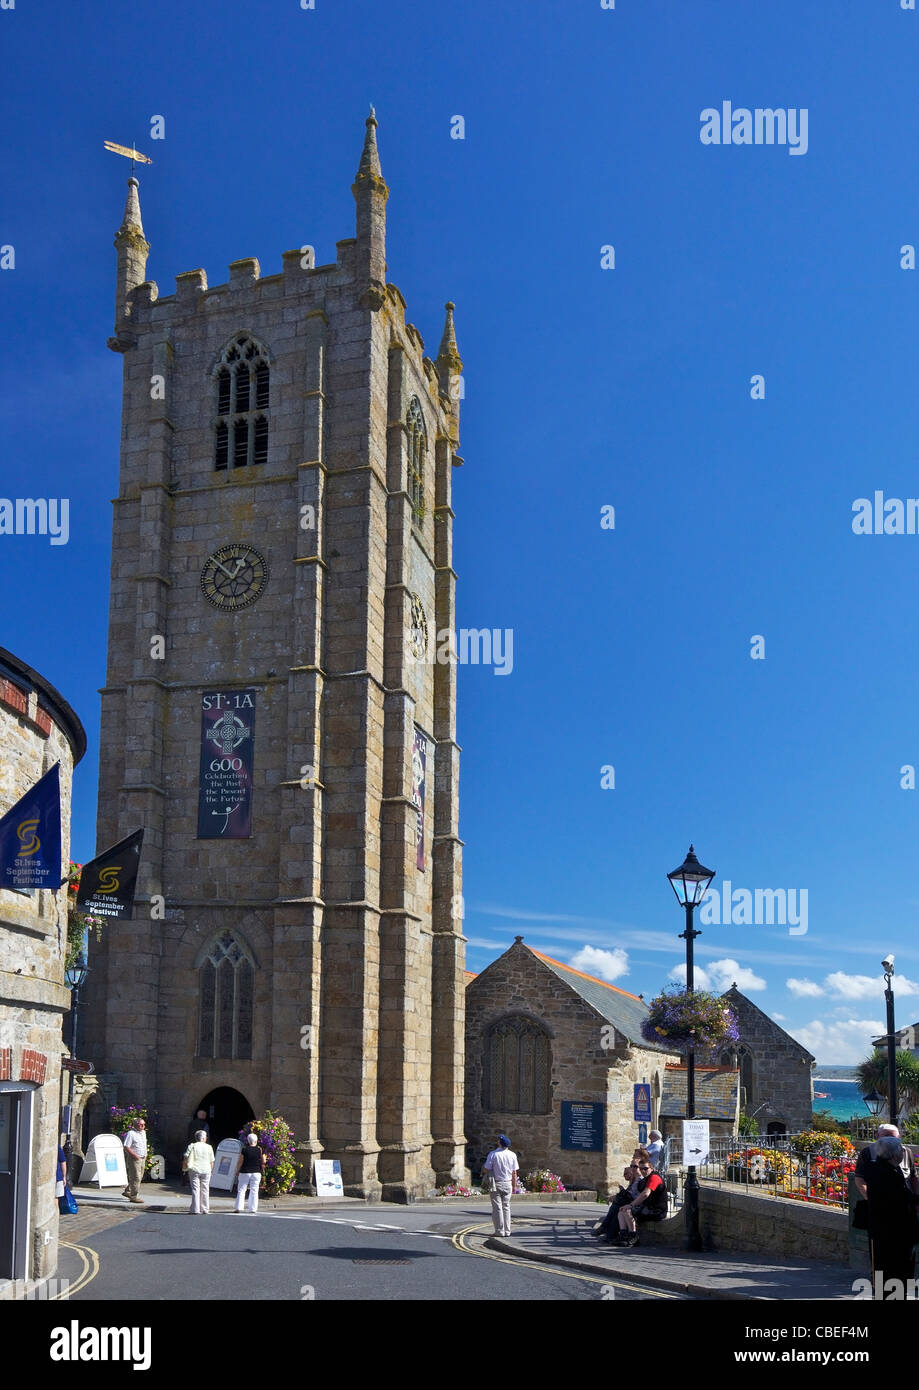 Iglesia parroquial, St Ives, Cornwall, en el suroeste de Inglaterra, UK, Reino Unido, GB, Gran Bretaña, Islas Británicas, Europa, UE Foto de stock